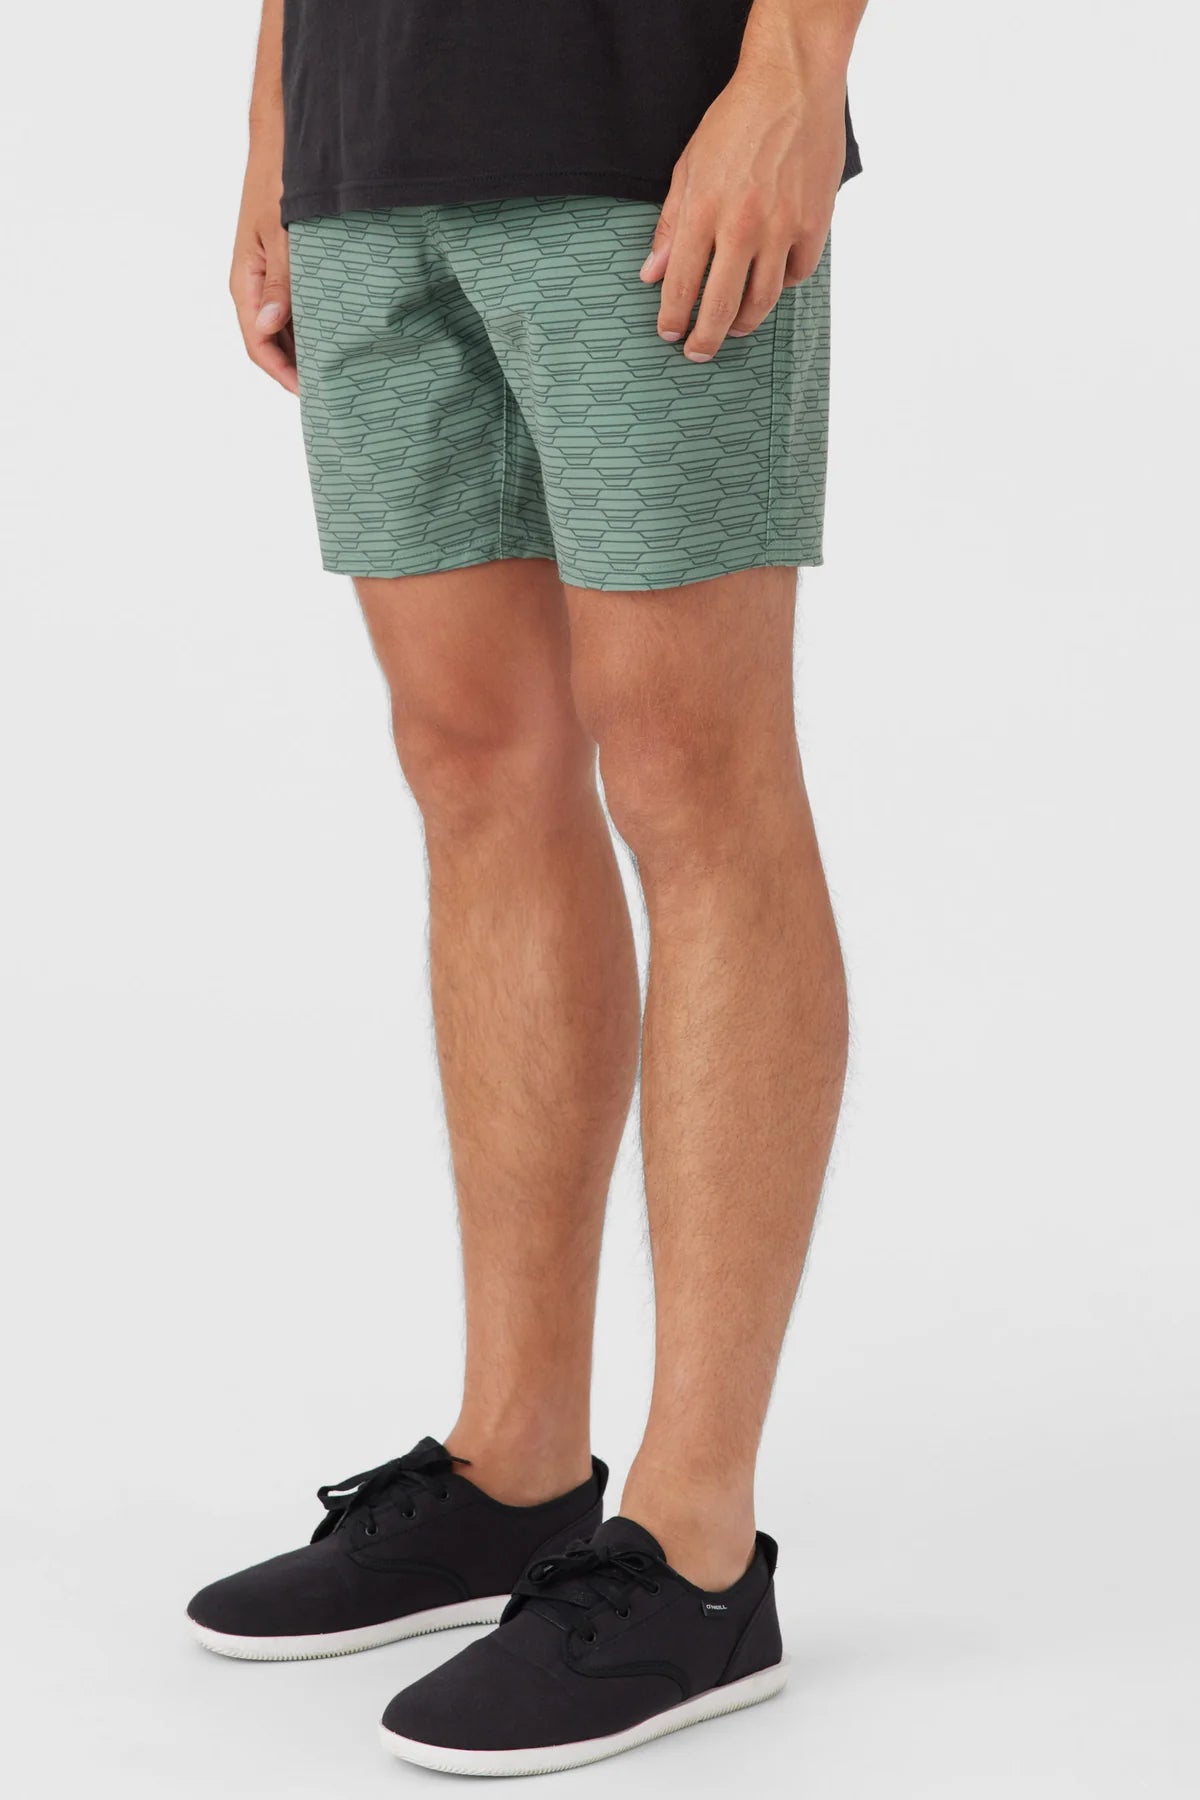 O'Neill Men's Stockton E-Waist 18" Hybrid Shorts